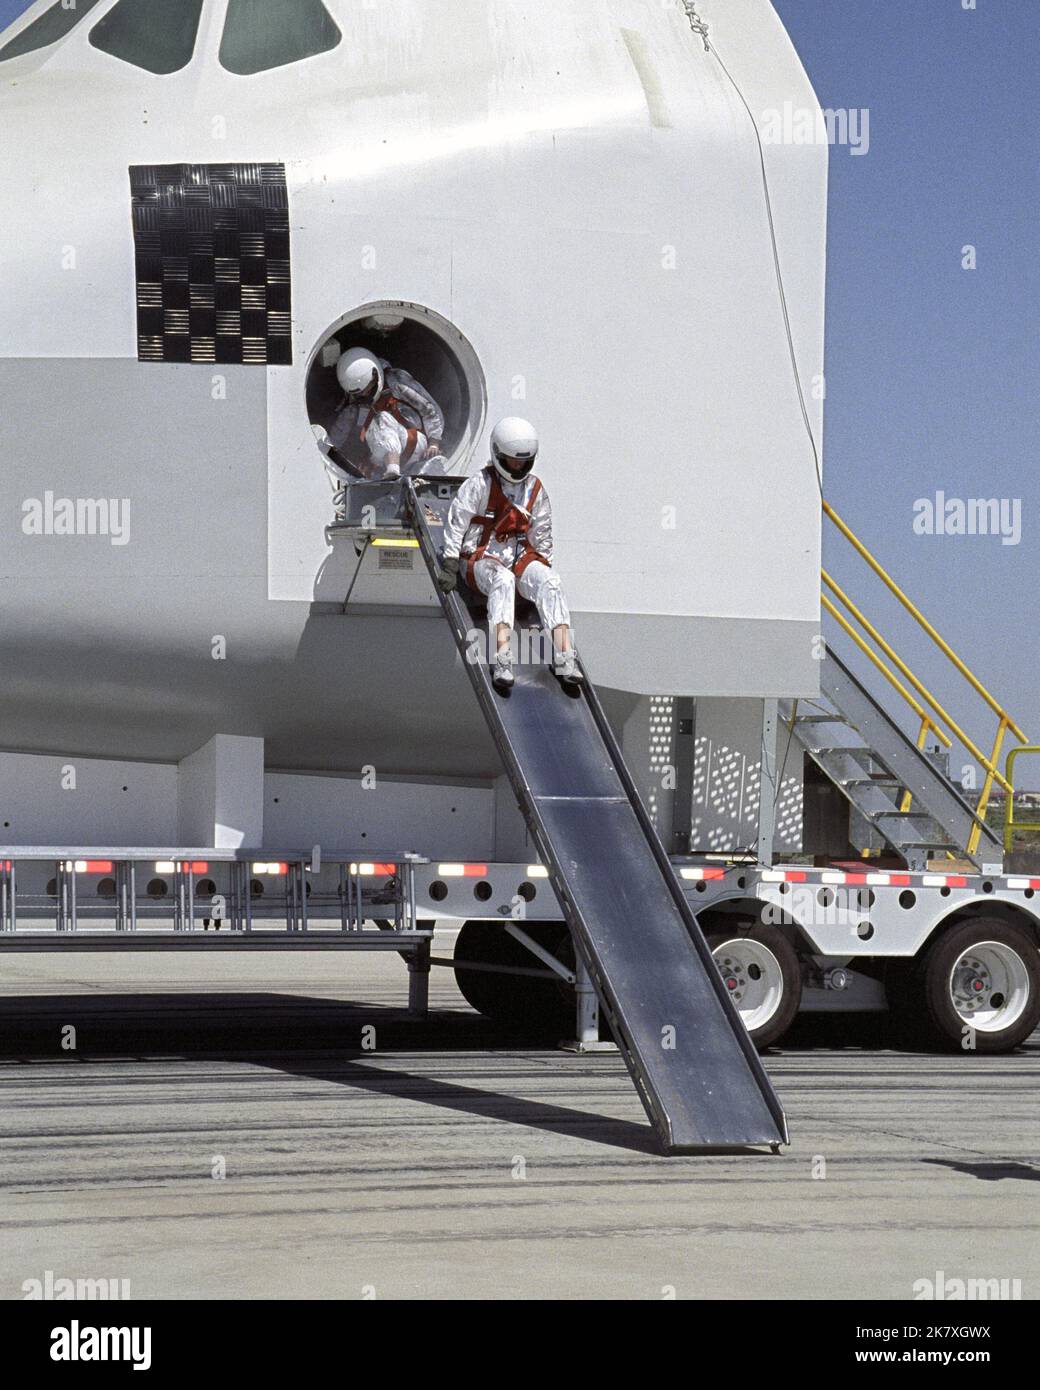 Un « astronaute » volontaire commence une sortie d'une maquette d'équipage de la navette spatiale lors d'un exercice d'entraînement de sauvetage et de récupération. Pendant que le personnel de secours prépare des portées d'évacuation, deux « astronautes » se préparent à utiliser une glissière de sortie d'une maquette de navette lors d'un exercice d'entraînement de secours. Banque D'Images